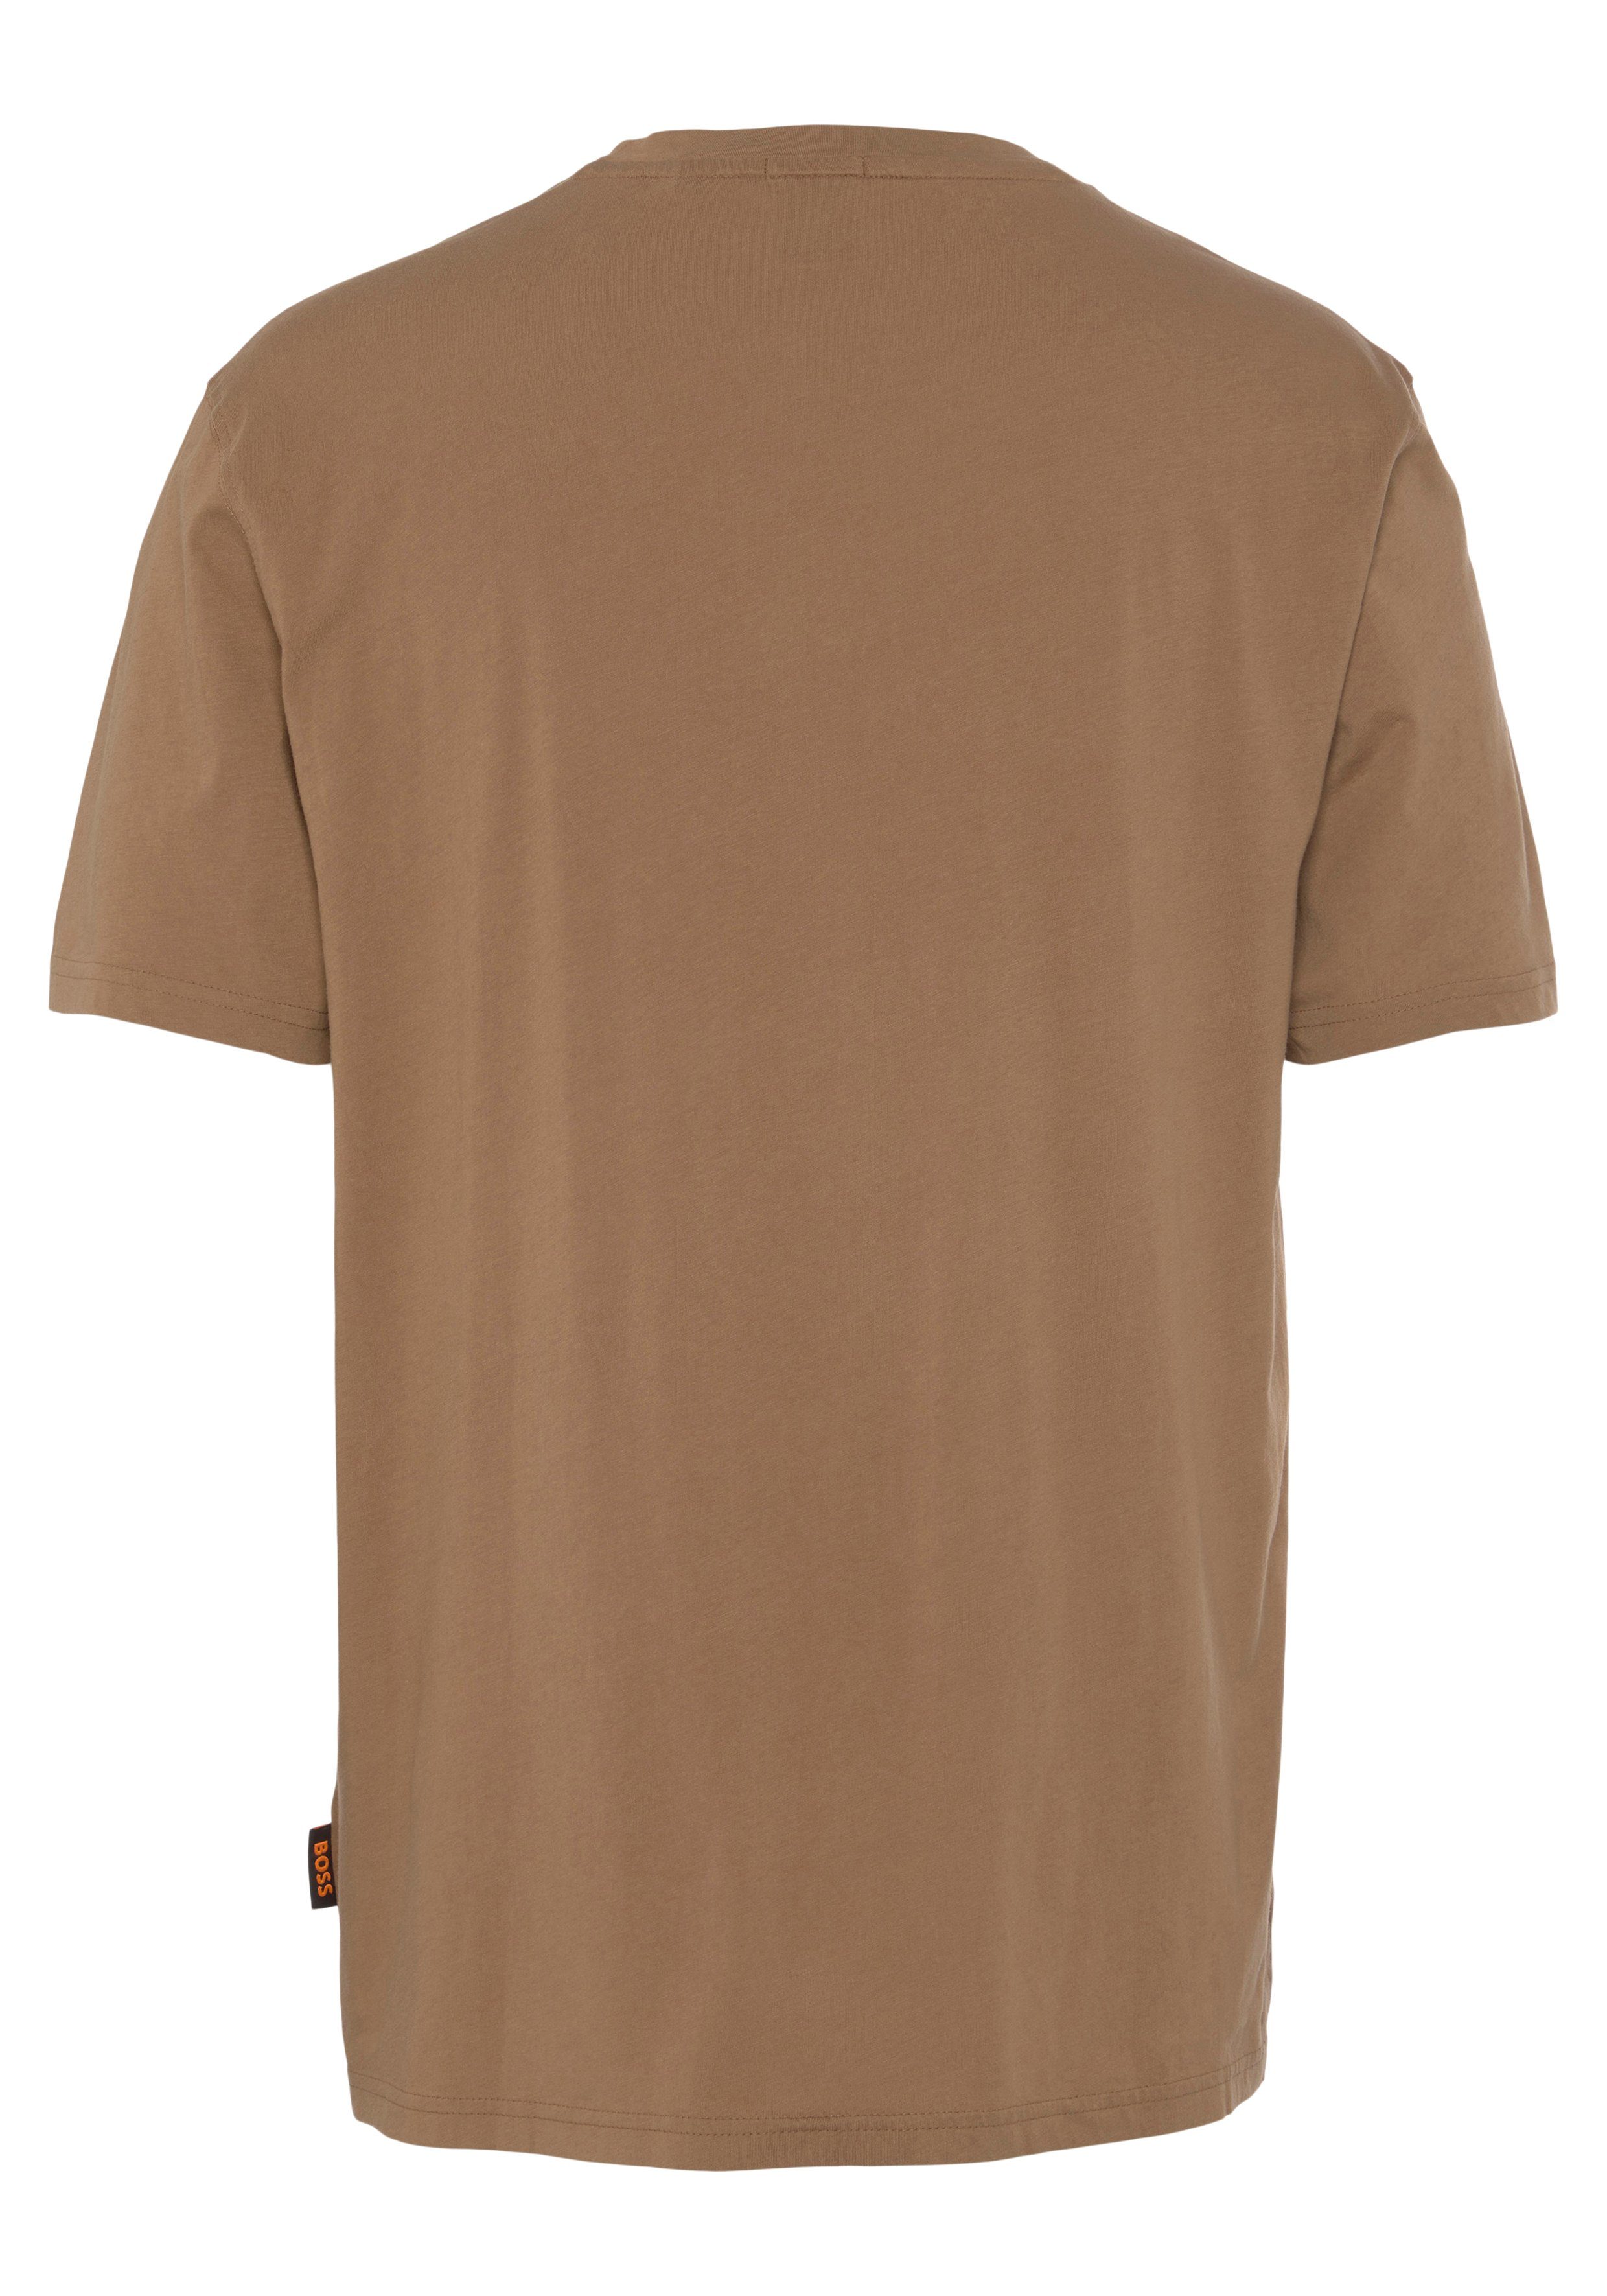 BOSS der TeeBOSSRete BOSS Beige mit ORANGE auf Brust Markenlabel ORANGE T-Shirt